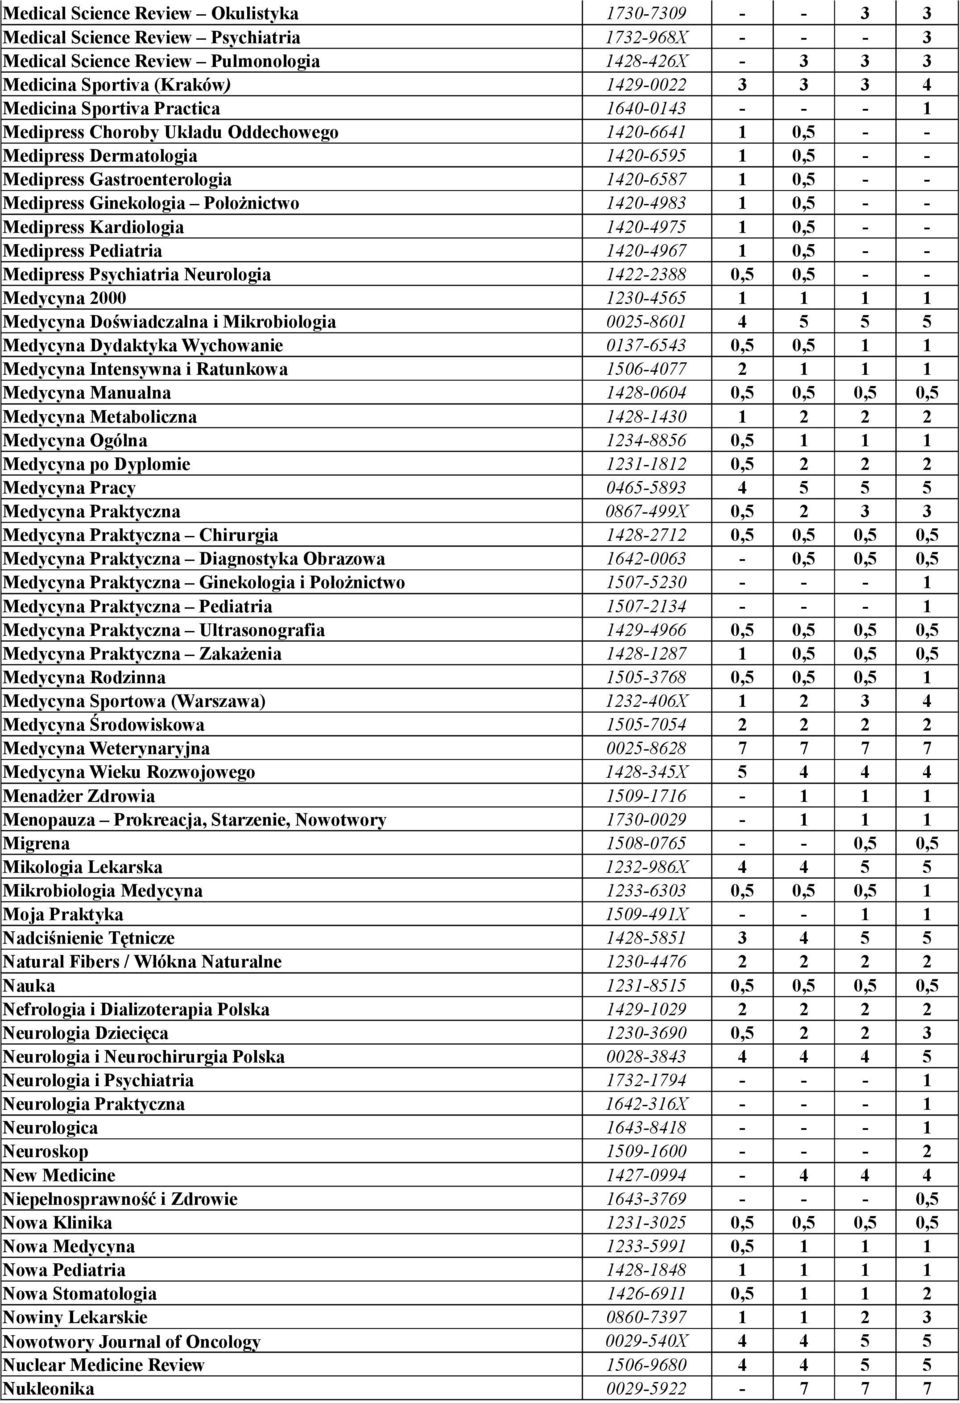 Medipress Ginekologia Położnictwo 1420-4983 1 0,5 - - Medipress Kardiologia 1420-4975 1 0,5 - - Medipress Pediatria 1420-4967 1 0,5 - - Medipress Psychiatria Neurologia 1422-2388 0,5 0,5 - - Medycyna